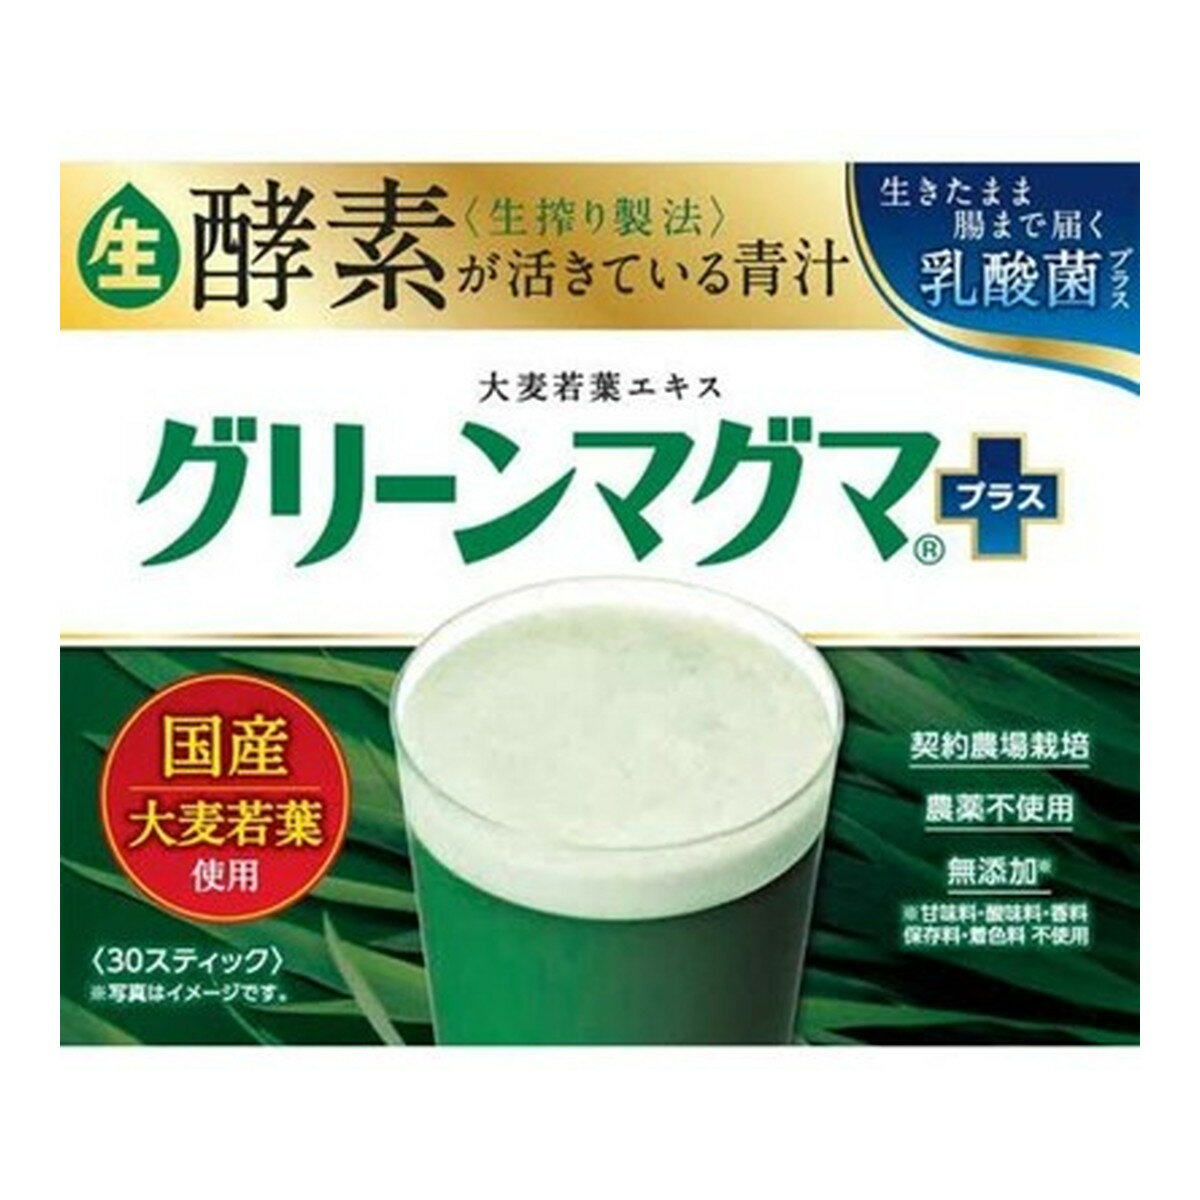 商品名：日本薬品開発 グリーンマグマ プラス 3g×30包入内容量：3g×30包入JANコード：4987368110427発売元、製造元、輸入元又は販売元：日本薬品開発株式会社原産国：日本区分：その他健康食品商品番号：103-4987368110427商品説明青汁が苦手な方でも飲める！クセがなく飲みやすい。さらに、搾ったエキスだから溶けやすいので、工夫次第で色々楽しめます。●豆乳に混ぜて●牛乳に混ぜてシリアルと●ヨーグルトに混ぜて●りんごジュースに混ぜて契約農場栽培 農薬不使用 無添加（甘味料・酸味料・香料・保存料・着色料不使用）生酵素が活きている青汁生きたまま腸まで届く乳酸菌プラス製法が違う！グリーンマグマプラスの生搾り製法○グリーンマグマ＋の生搾り製法・熱を加えず生のまま 酵素等が活きてる・有用成分を搾り出す 吸収性が違う・エキスの青汁 ザラつきがなく美味しい広告文責：アットライフ株式会社TEL 050-3196-1510 ※商品パッケージは変更の場合あり。メーカー欠品または完売の際、キャンセルをお願いすることがあります。ご了承ください。